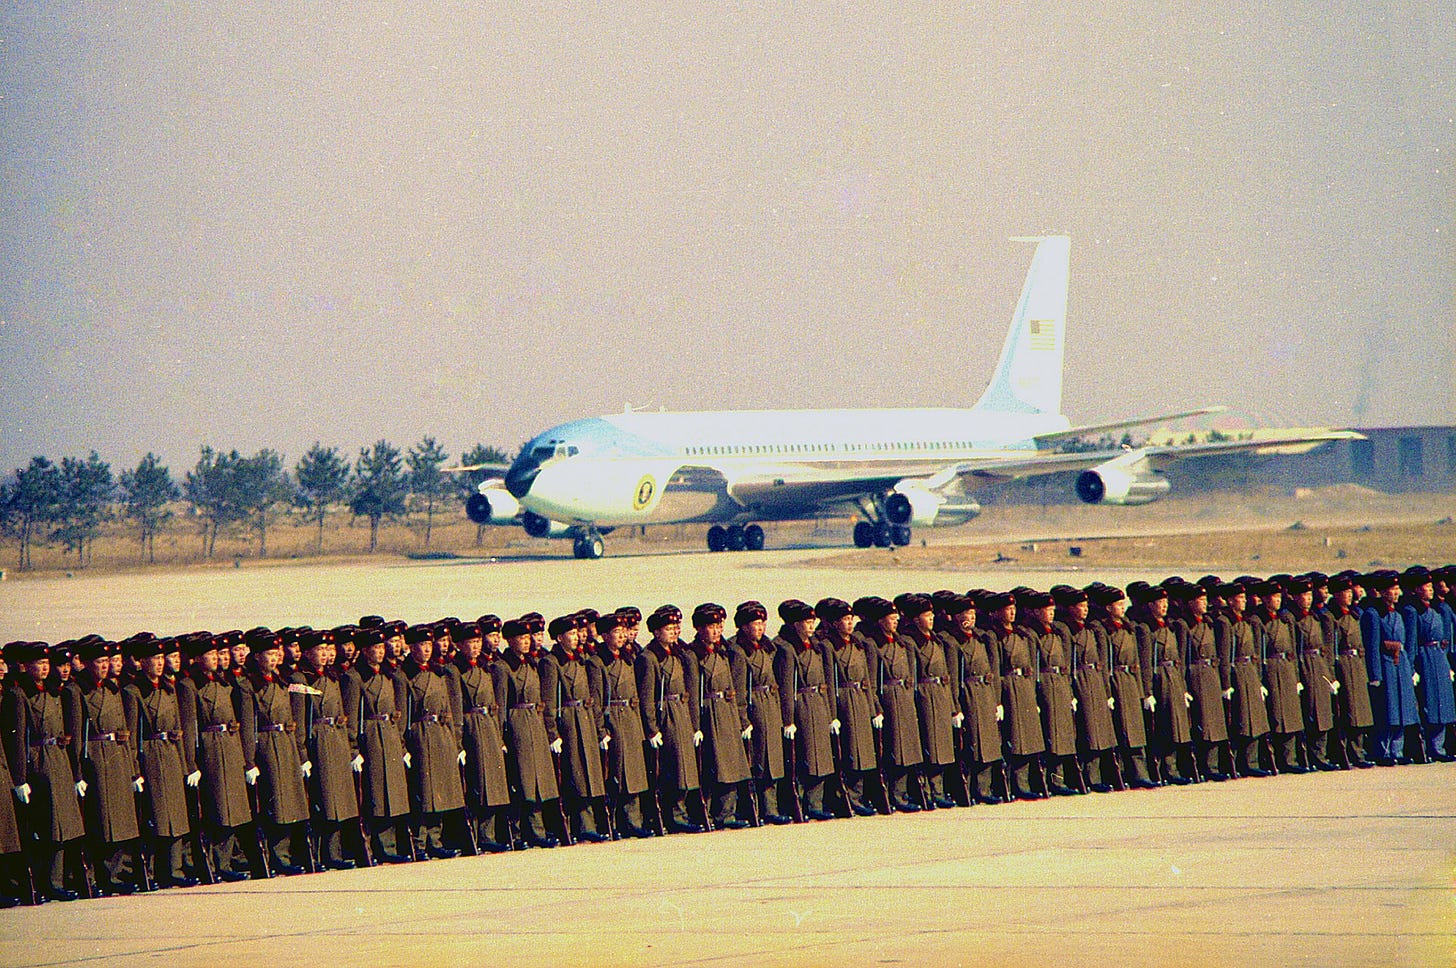 Arrival of Air Force One in Peking - NARA - 194412.jpg